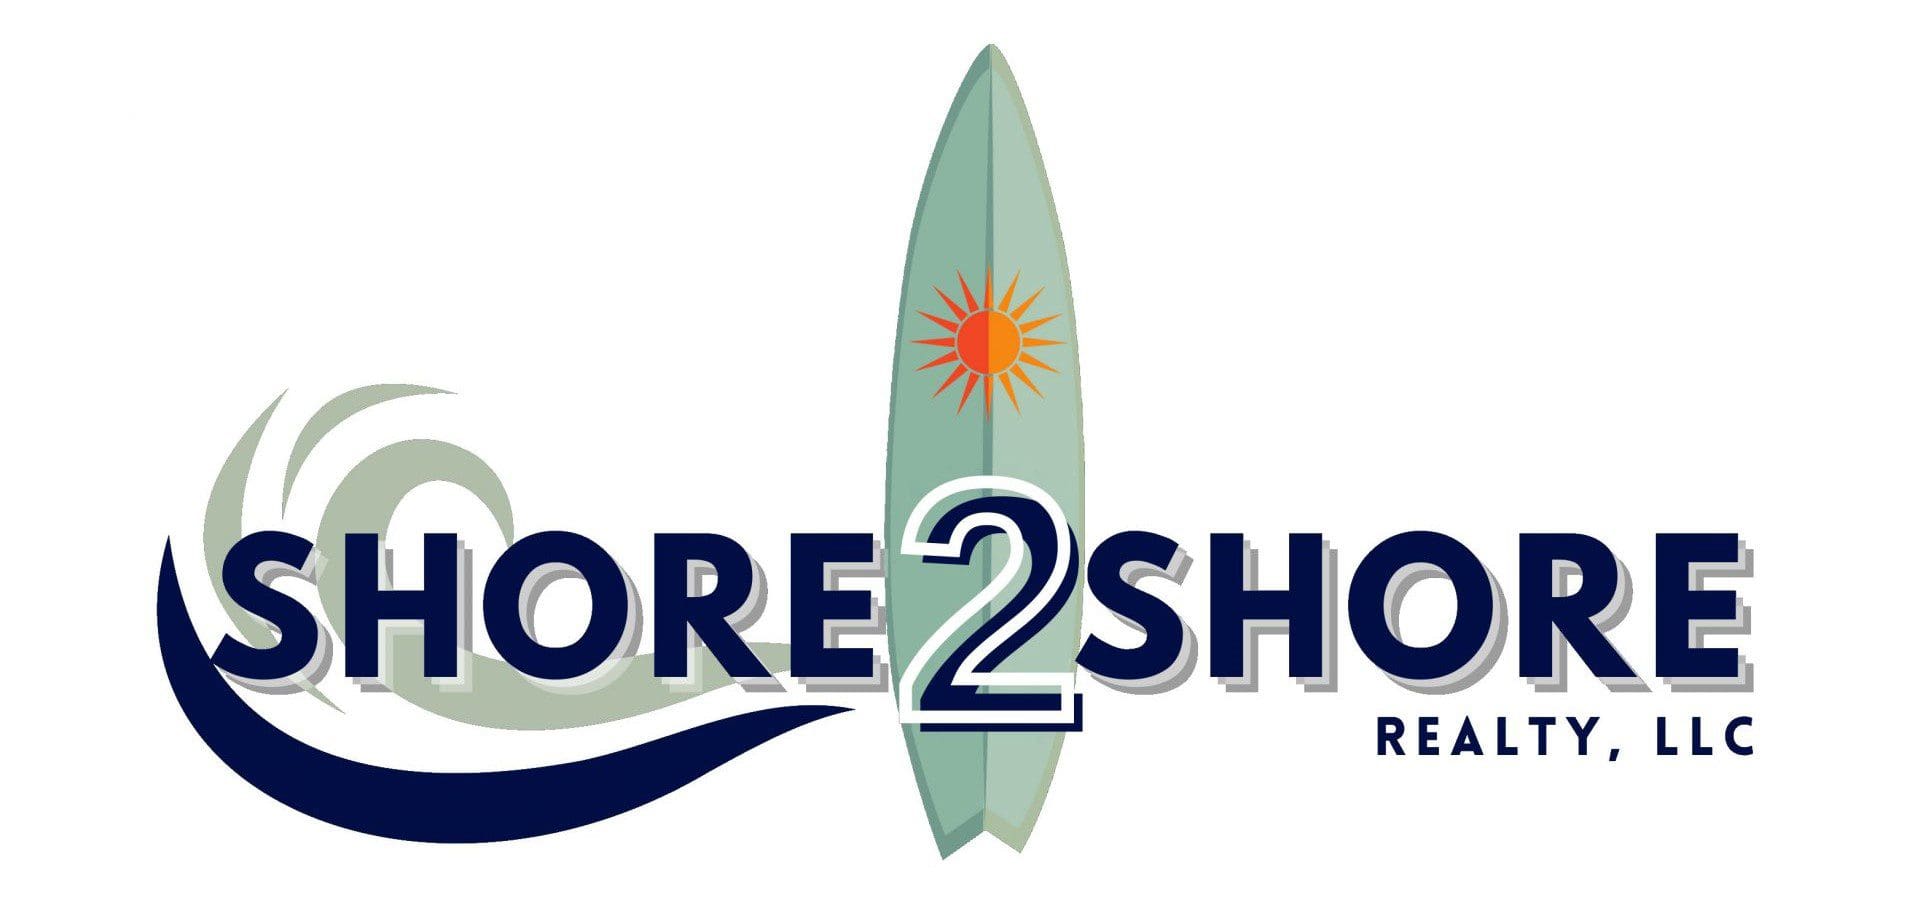 Shore 2 Shore Realty LLC